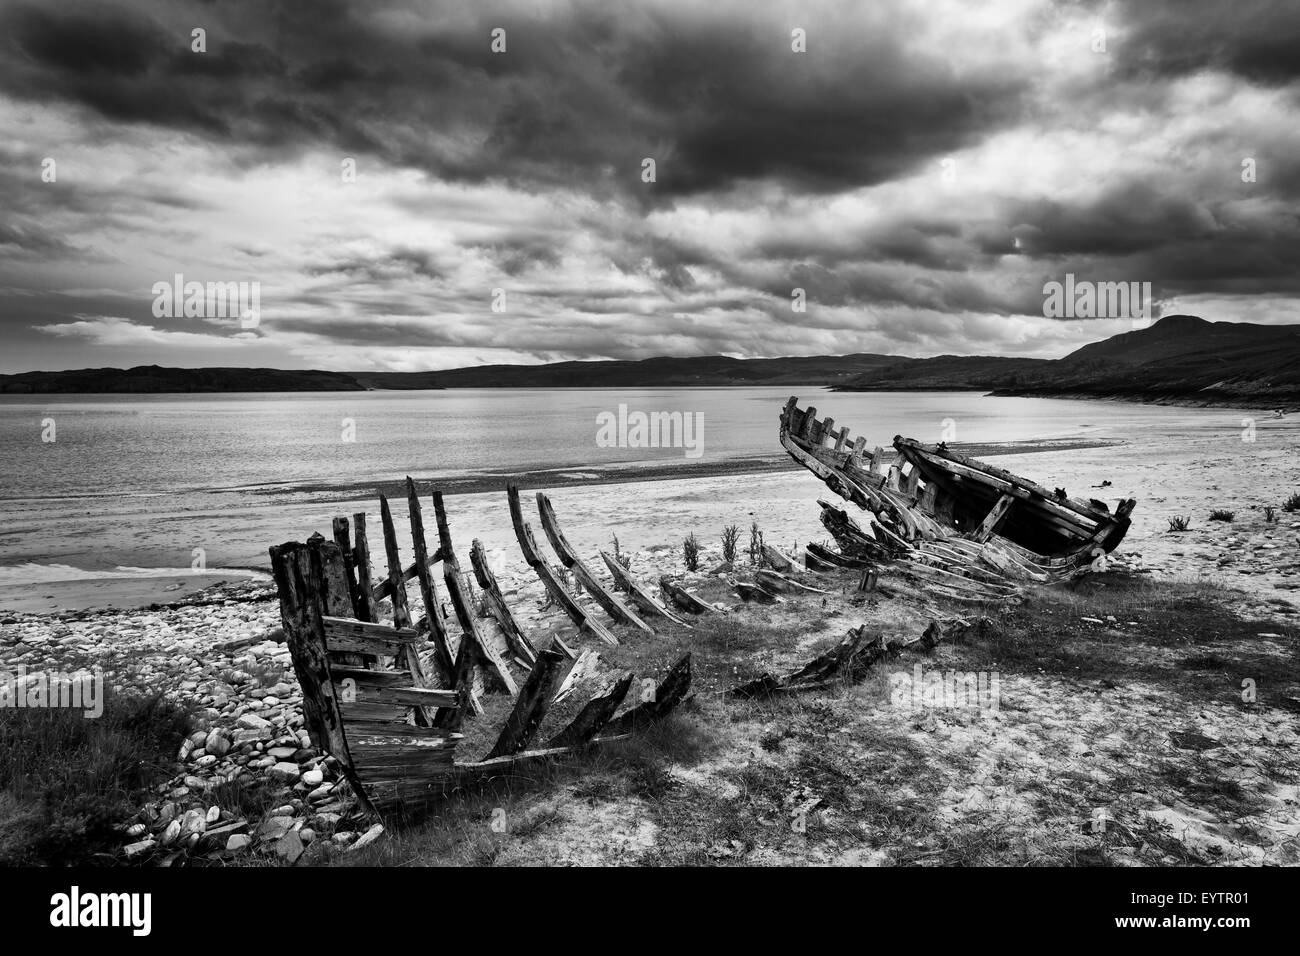 Talmine Bay, barca, nave relitto, legno, fiordo, mare, spiaggia, costa, Scozia, s/w Foto Stock